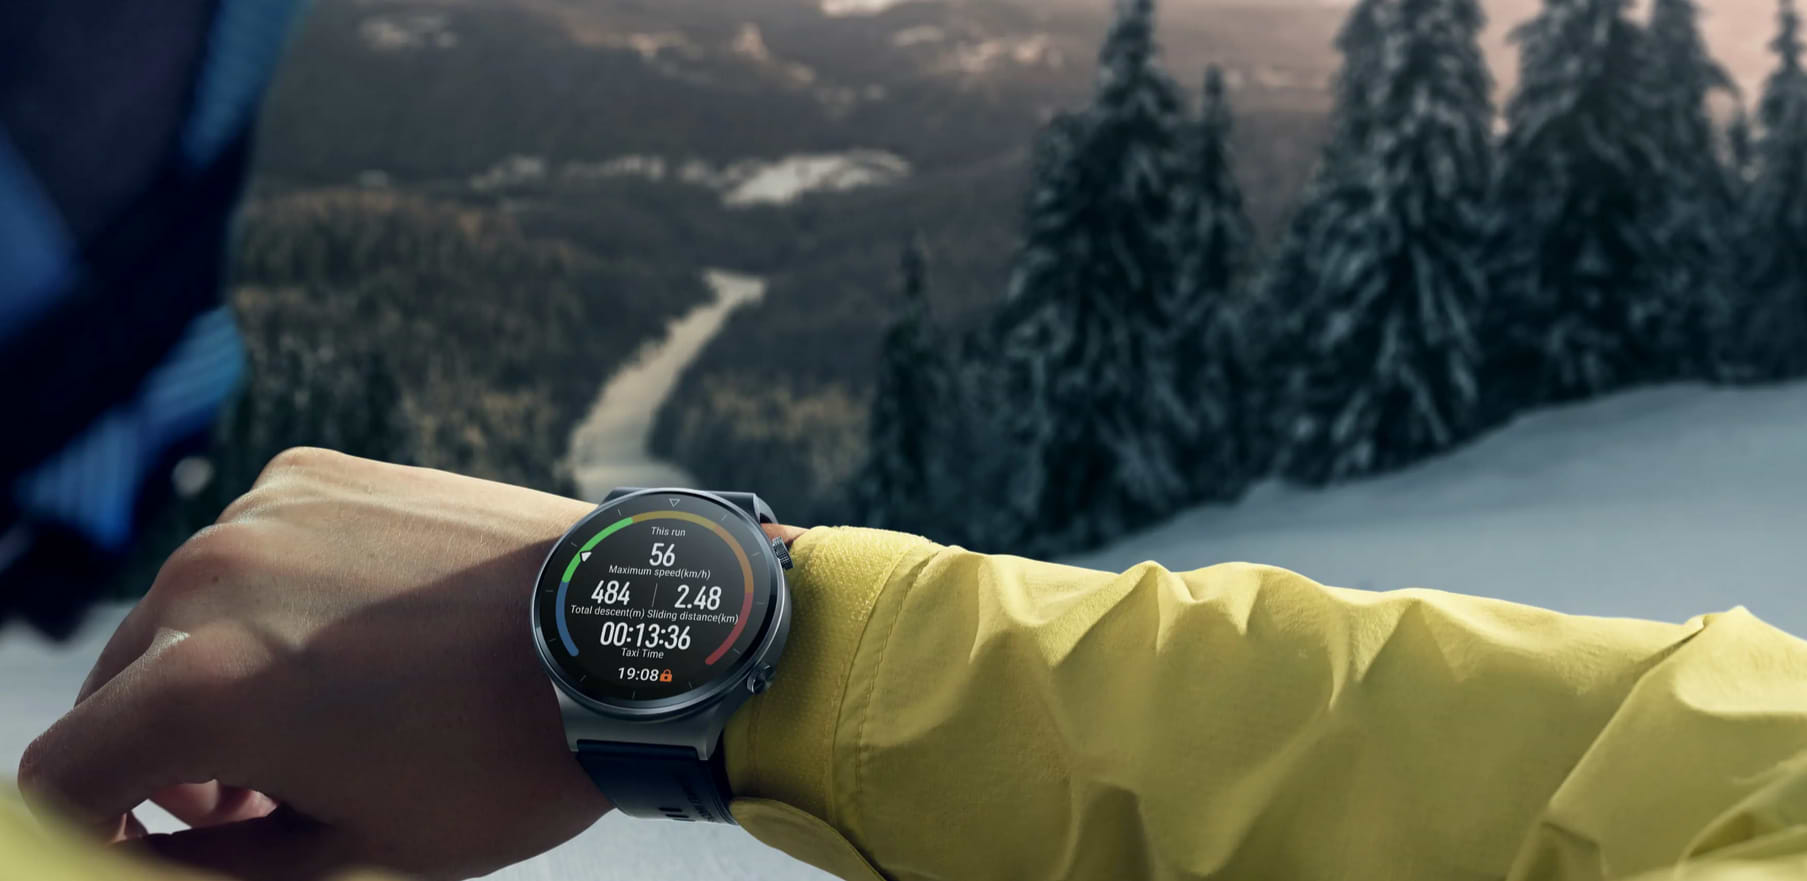 שעון חכם Huawei Watch GT 2 Pro - צבע אפור שנה אחריות ע"י היבואן הרשמי